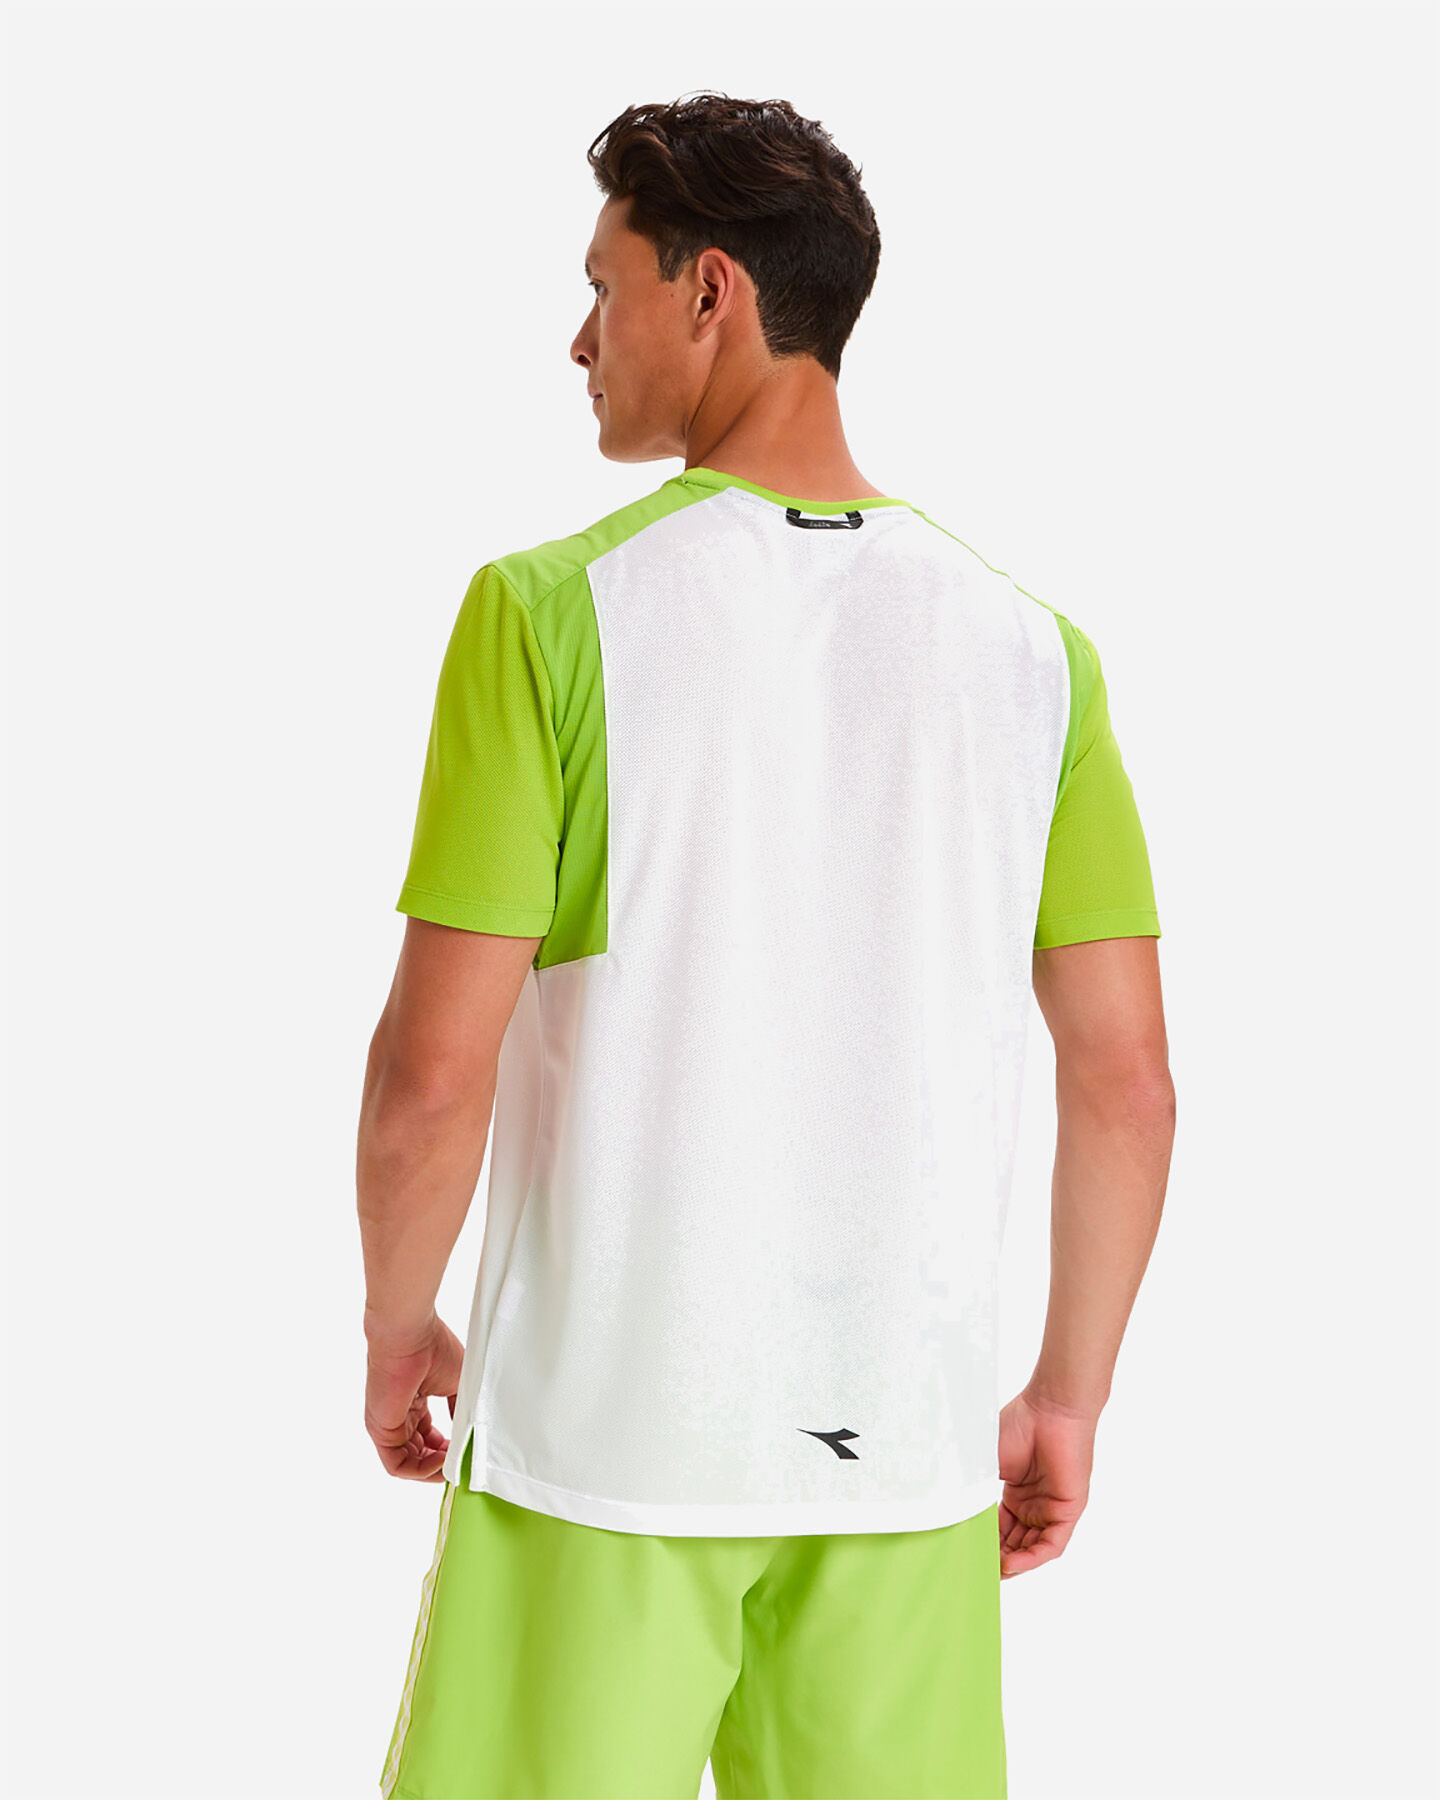  T-Shirt tennis DIADORA CLAY M S5316852|20002|S scatto 1